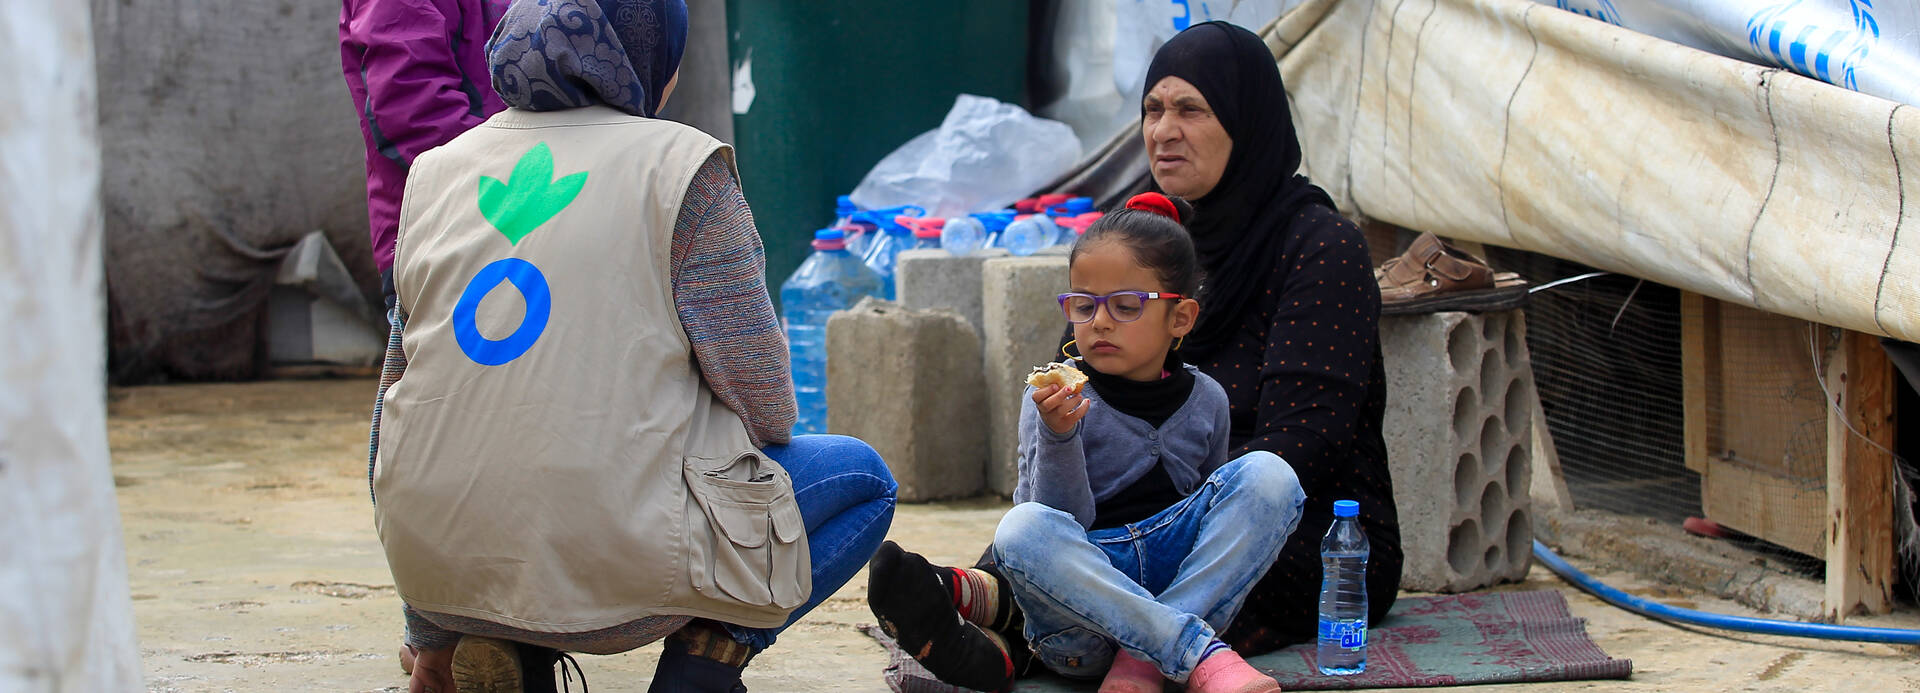 Mitarbeiterin von Aktion gegen den Hunger hilft syrischer Familie